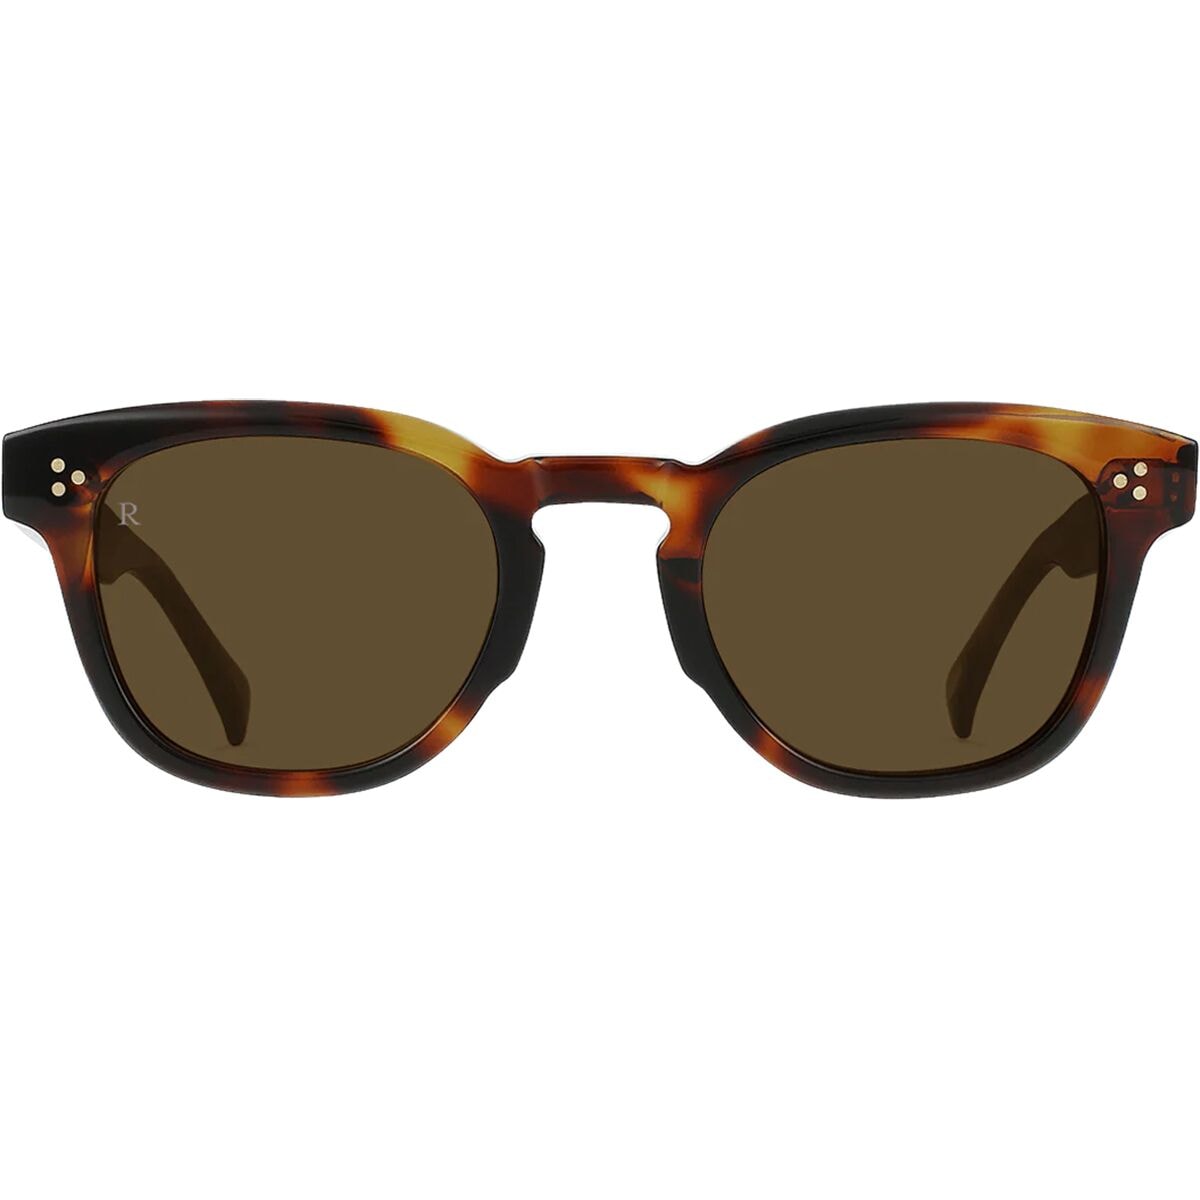 RAEN optics Squire Sunglasses - Accessories